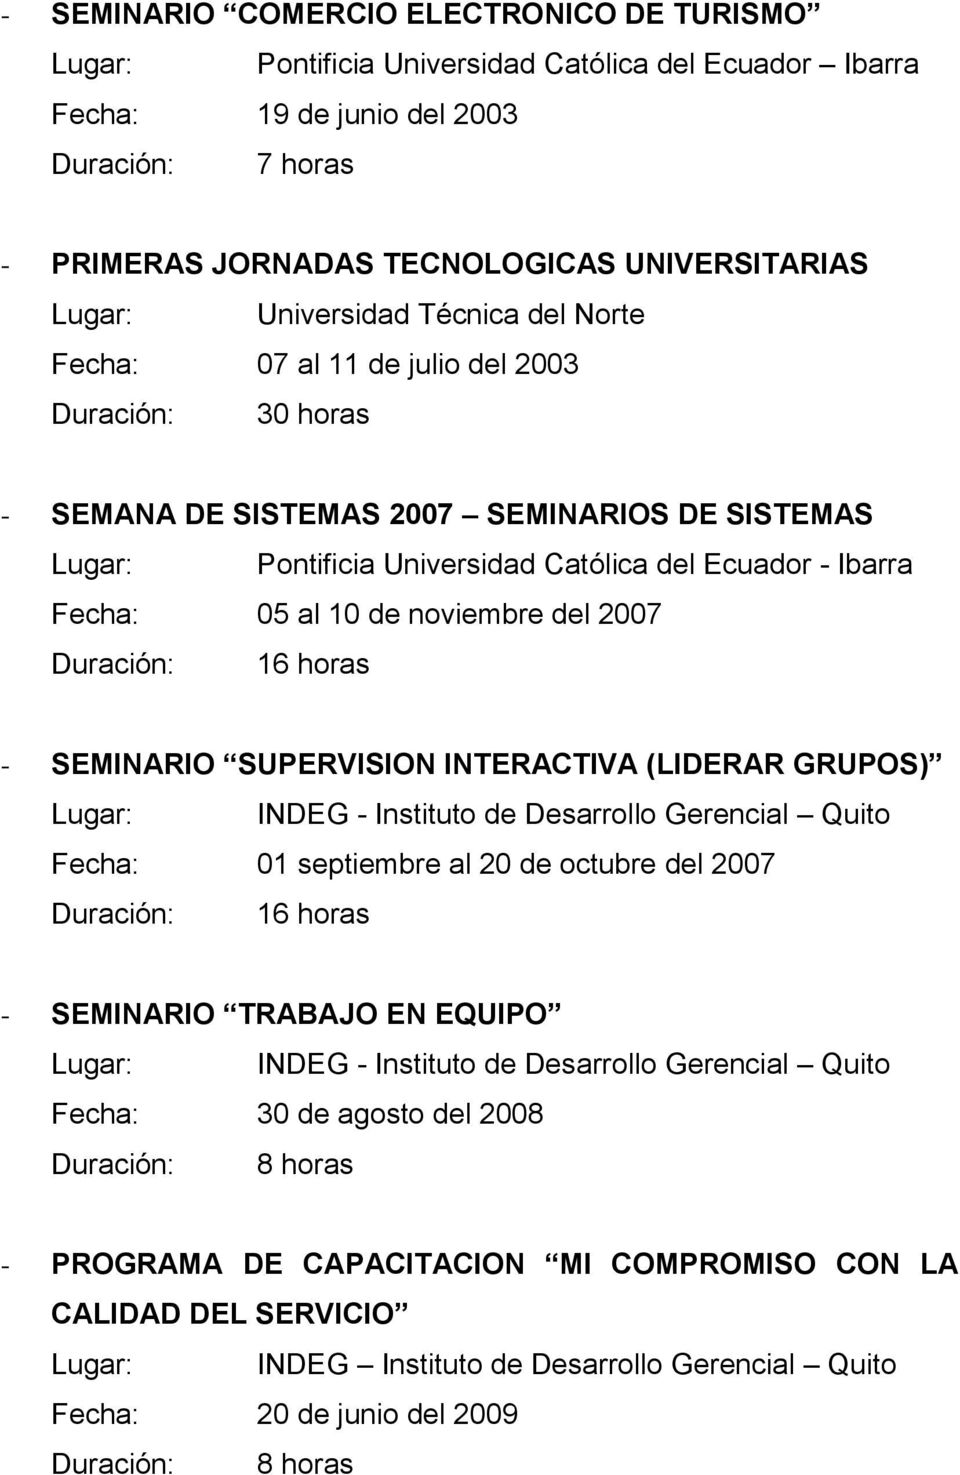 - SEMINARIO SUPERVISION INTERACTIVA (LIDERAR GRUPOS) Lugar: INDEG - Instituto de Desarrollo Gerencial Quito Fecha: 01 septiembre al 20 de octubre del 2007 Duración: 16 horas - SEMINARIO TRABAJO EN